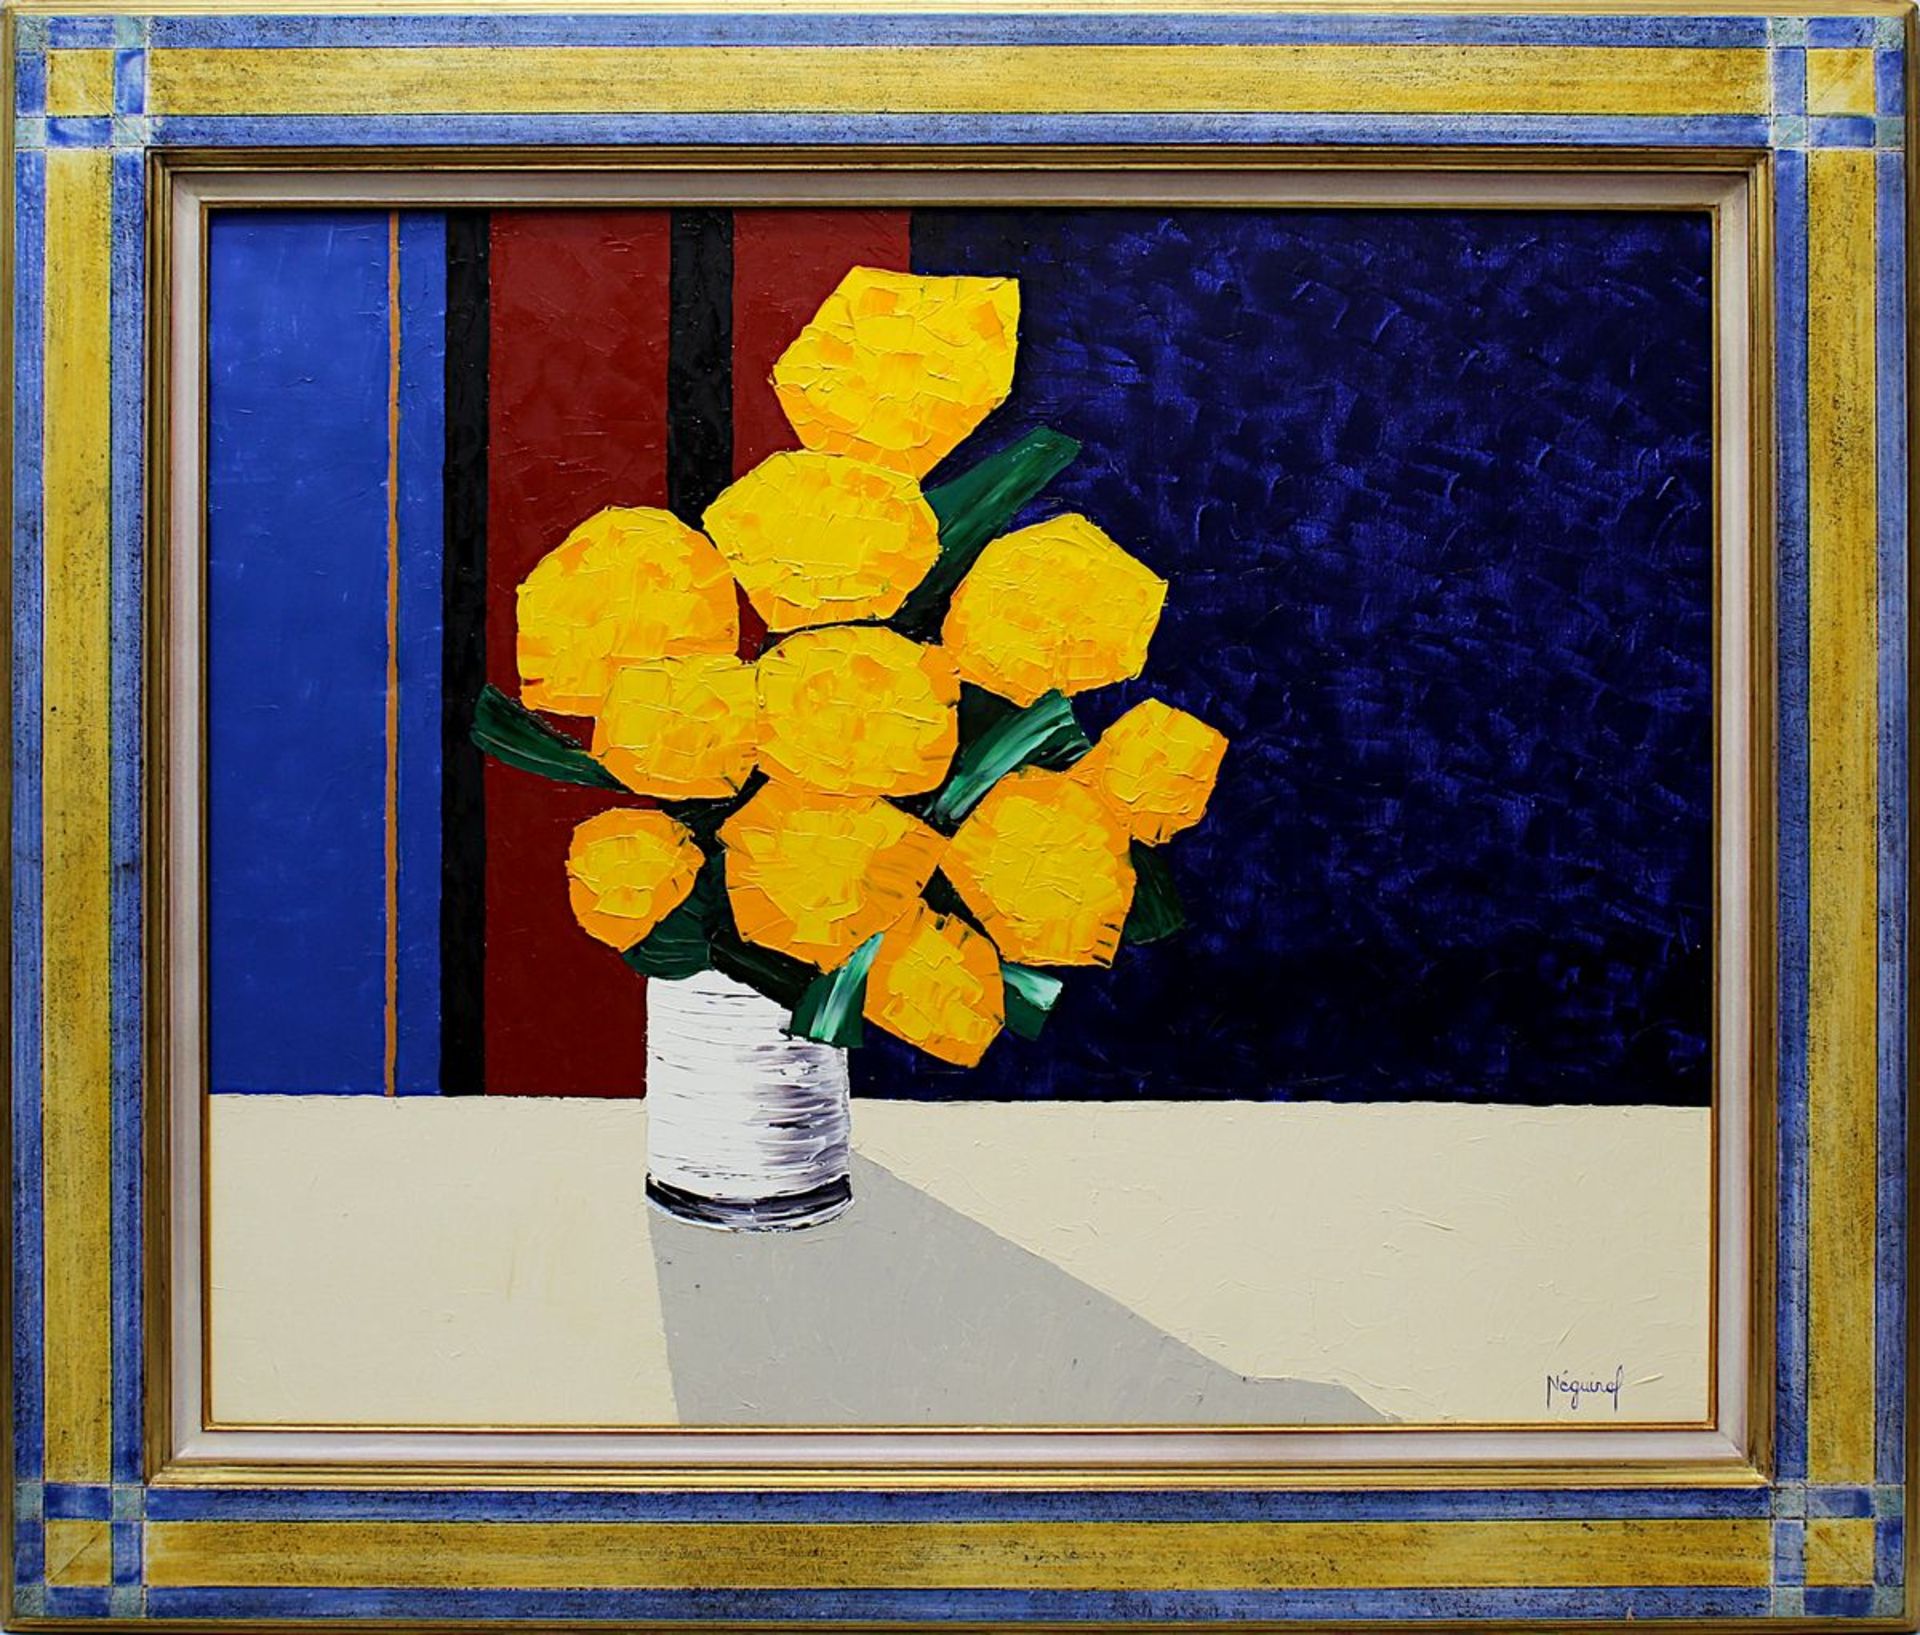 Néguiraf (zeitgenössischer Künstler 2. Hälfte 20. Jh.) Vase mit gelben Blumen vor blau-schwarz-rot